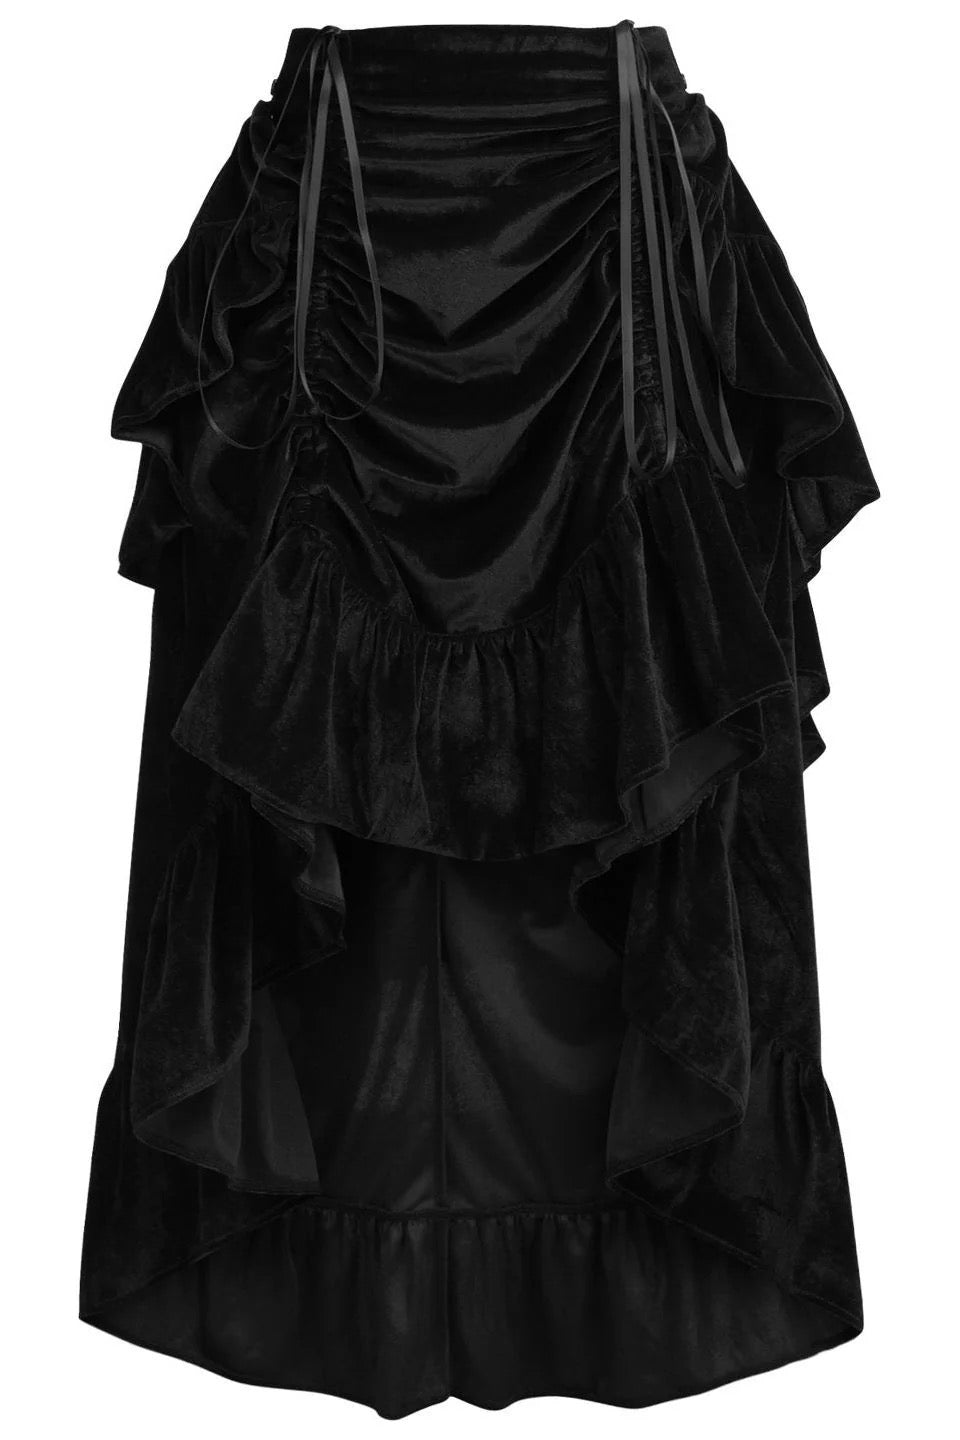 Black Velvet Bustle Skirt